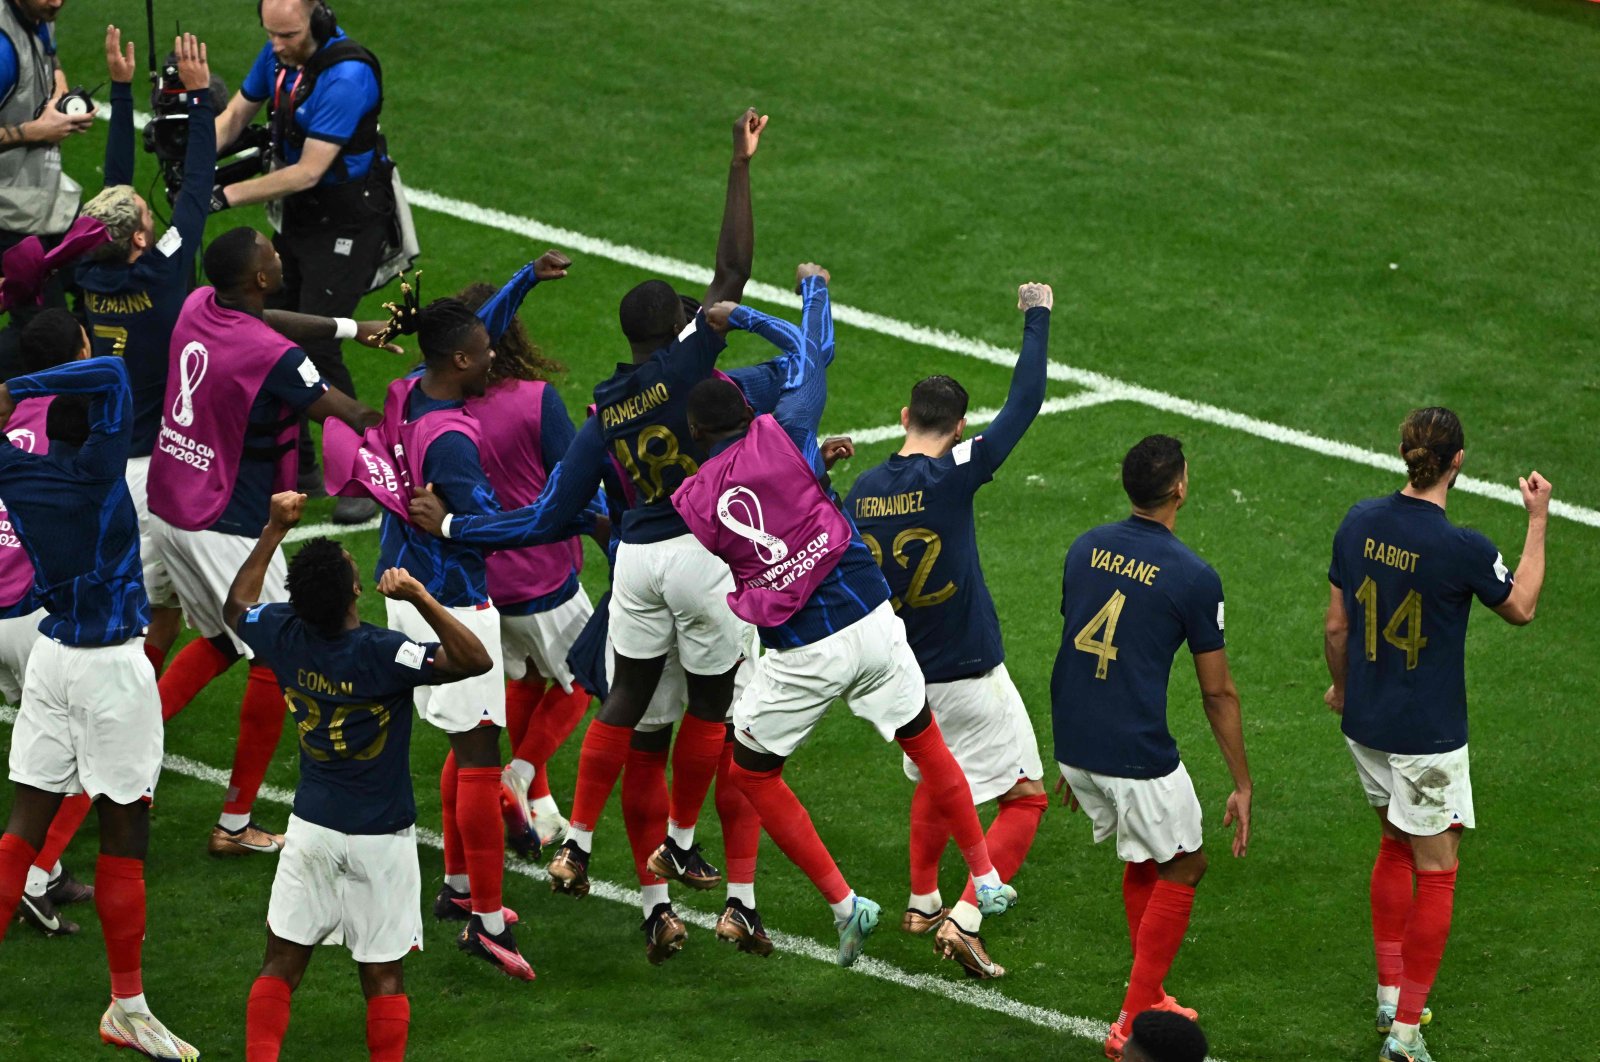 Juara bertahan Prancis melaju ke semifinal karena Kane gagal mengeksekusi penalti